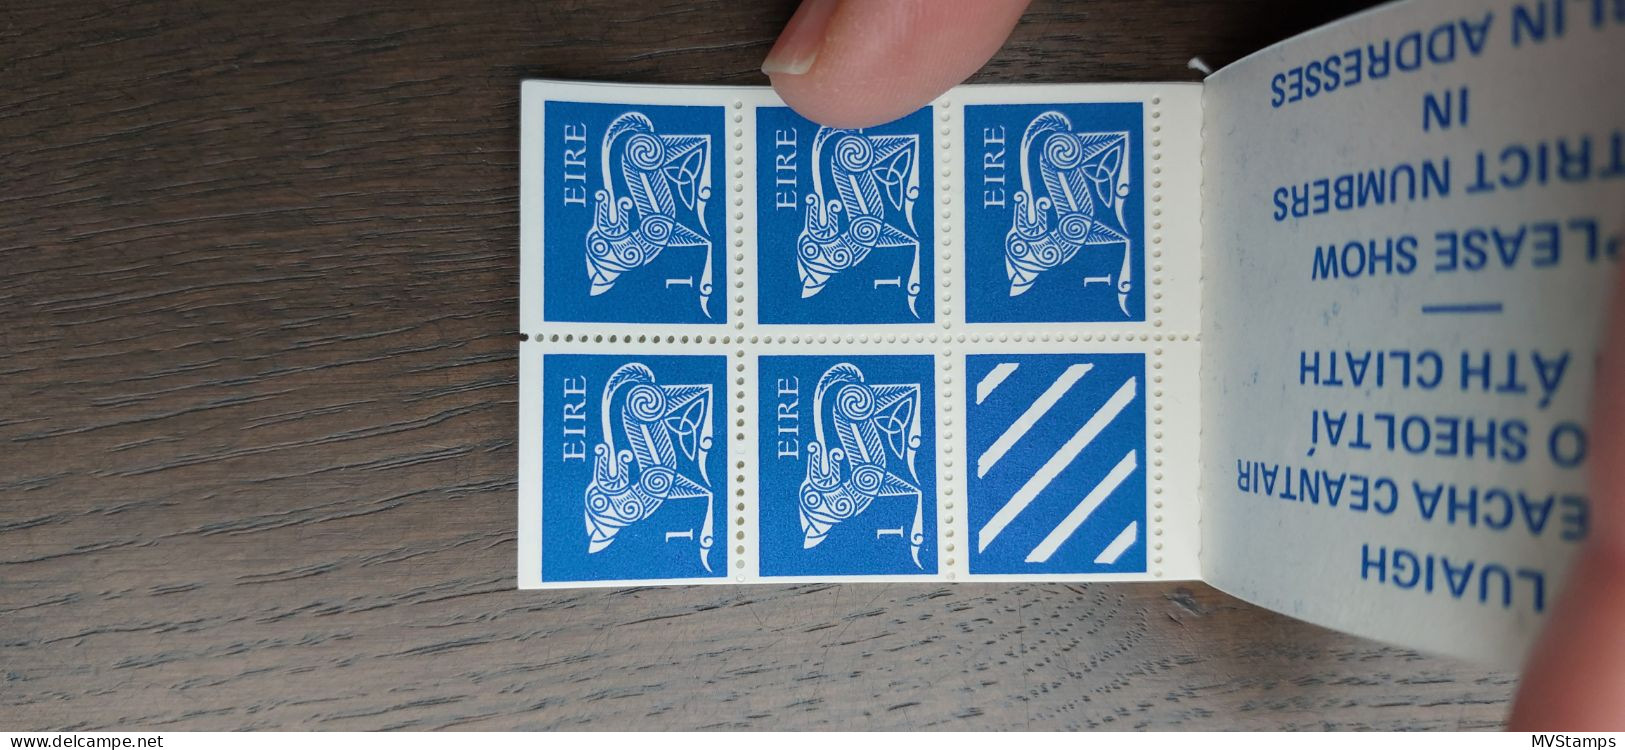 Ireland 1974 Stampbooklet Art Stamps (Michel MH 1) MNH - Markenheftchen